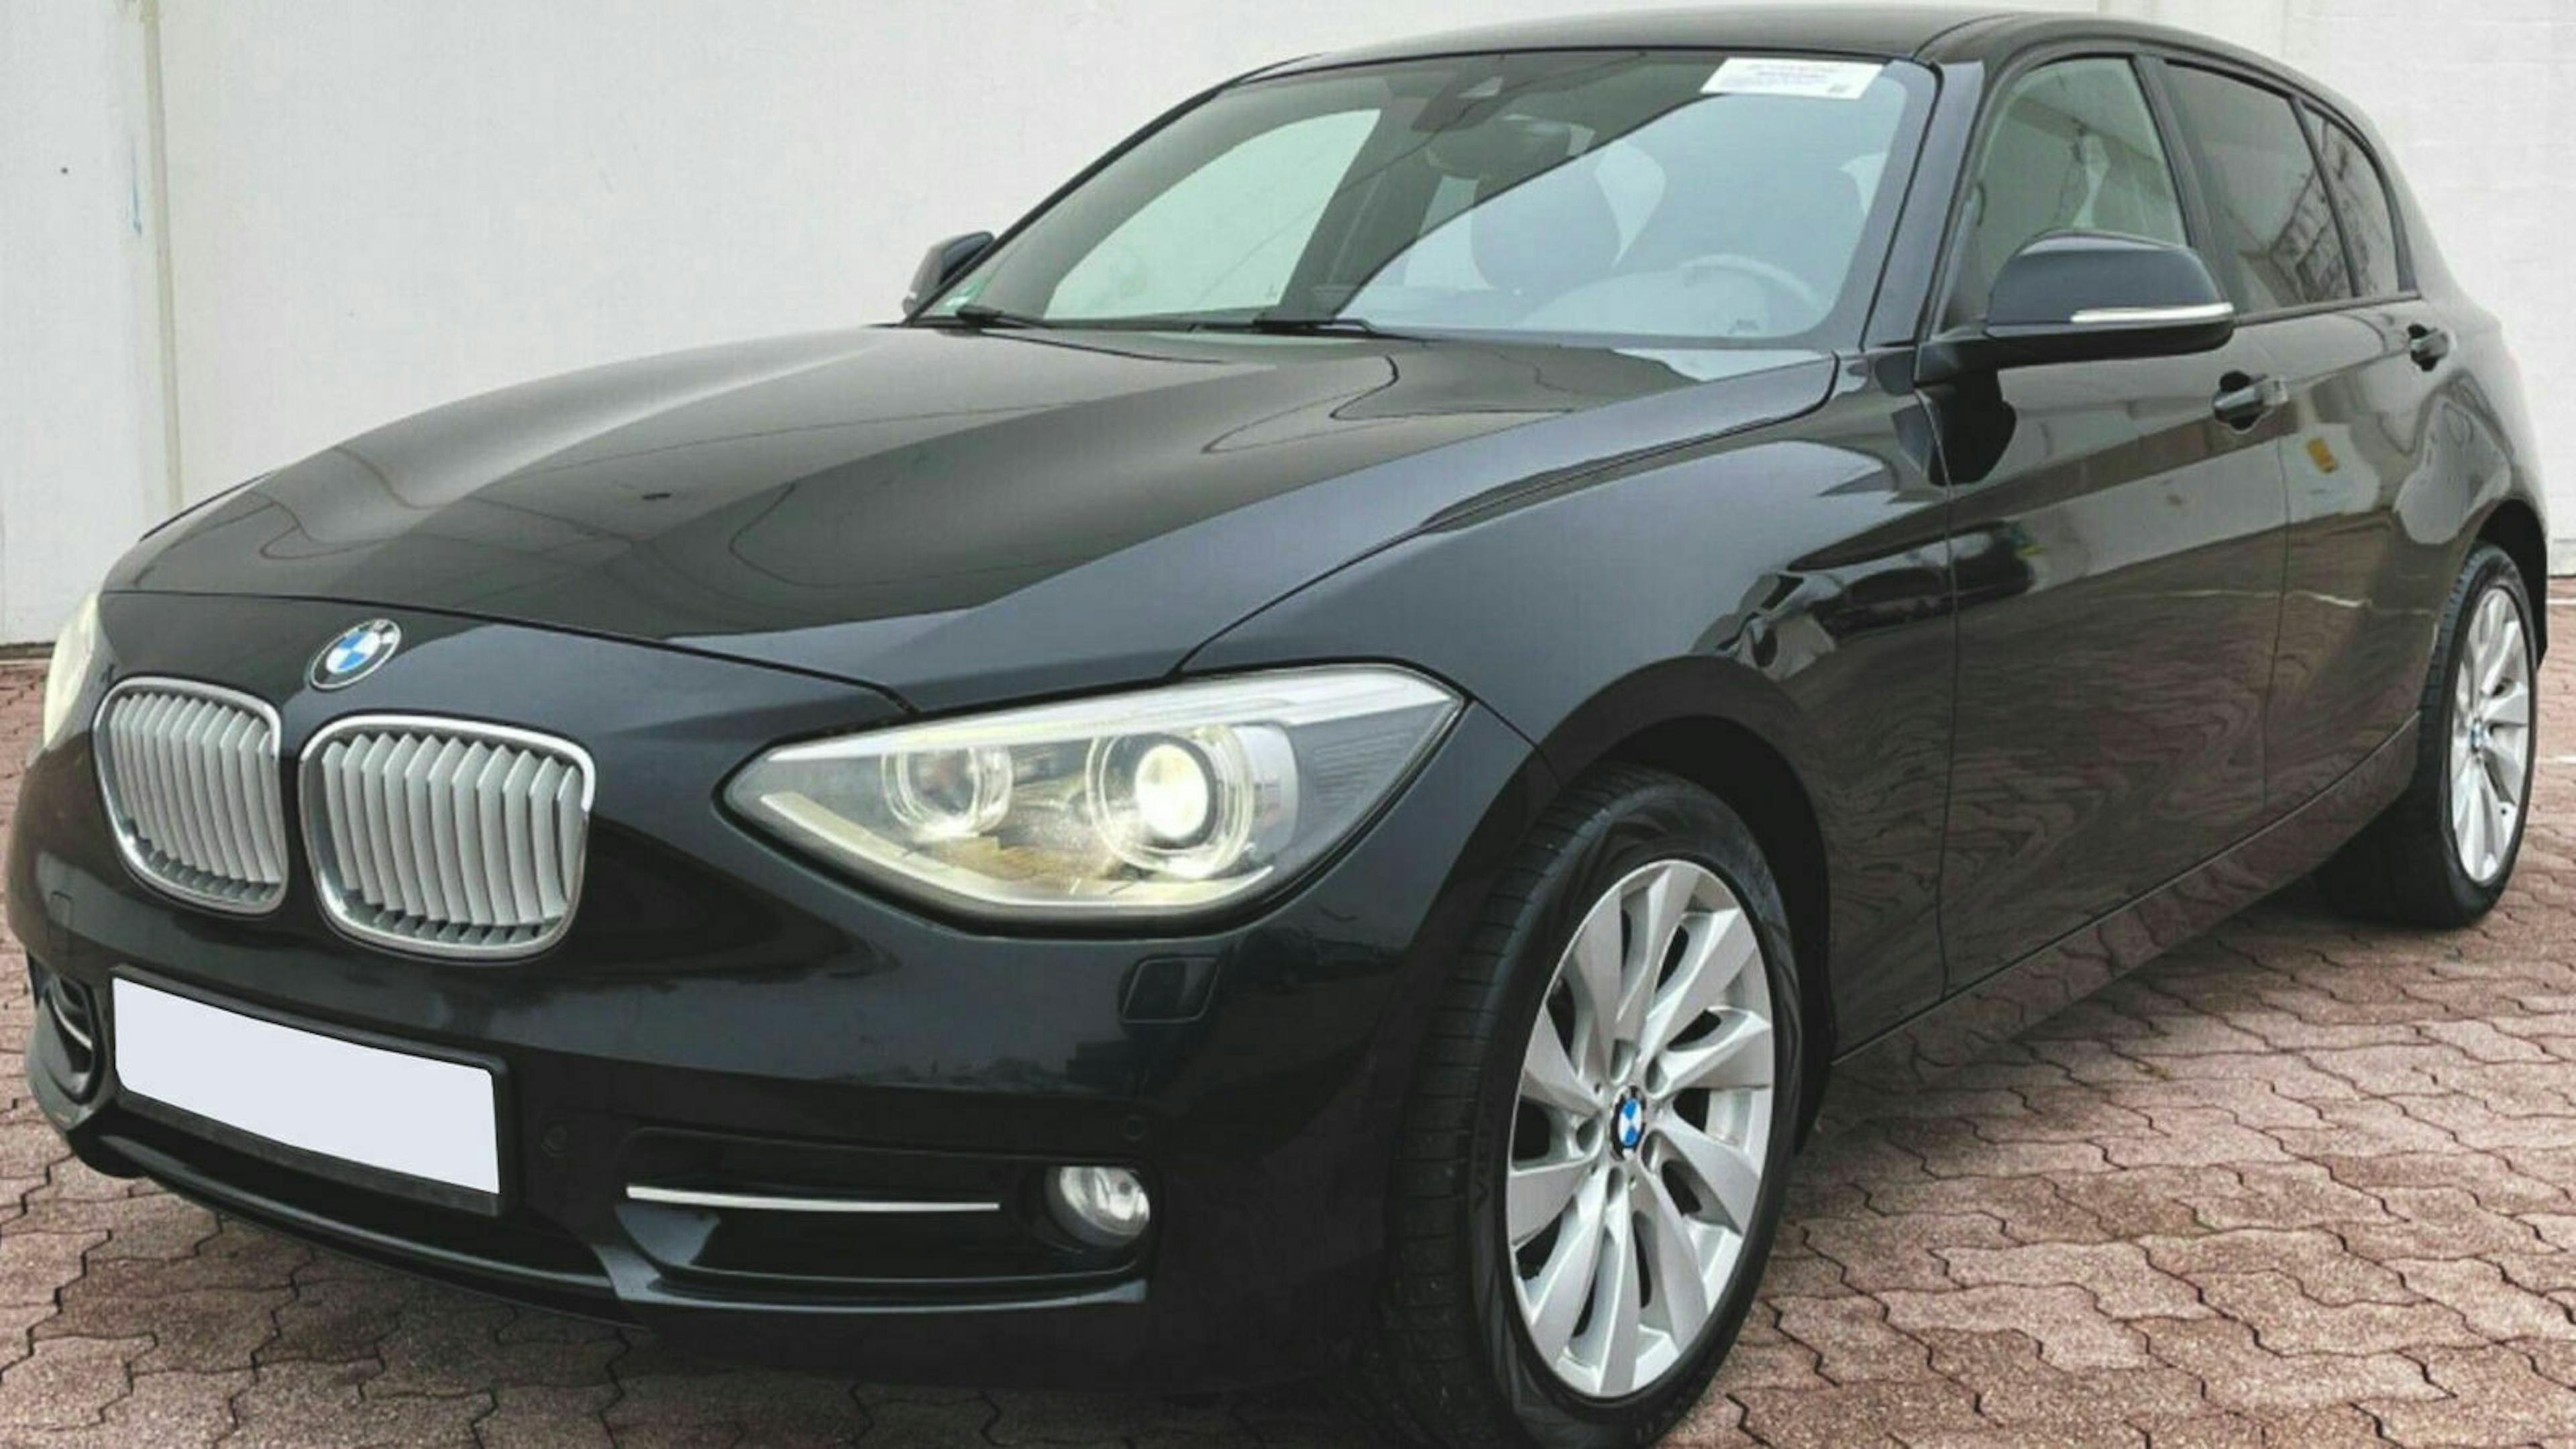 Ein schwarzer BMW 1er mit Heckantrieb steht vor einer weißen Wand